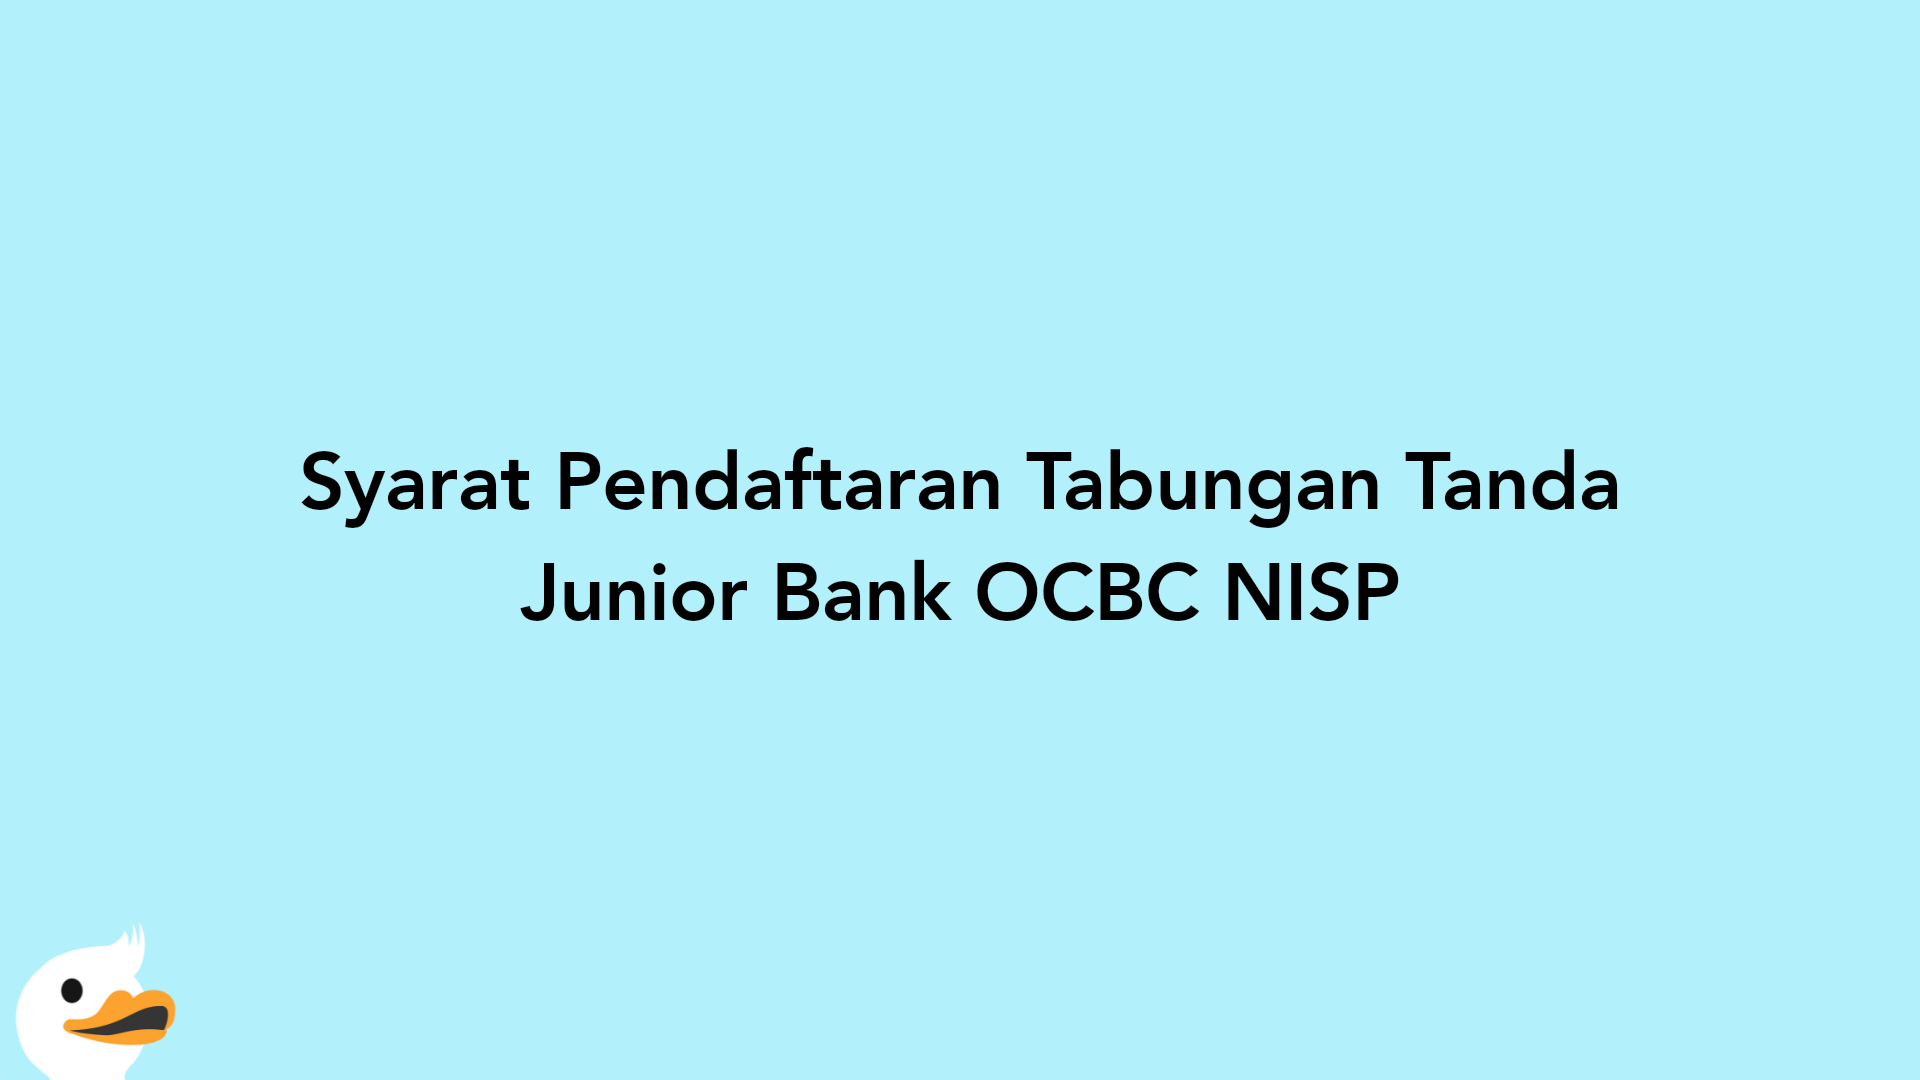 Syarat Pendaftaran Tabungan Tanda Junior Bank OCBC NISP